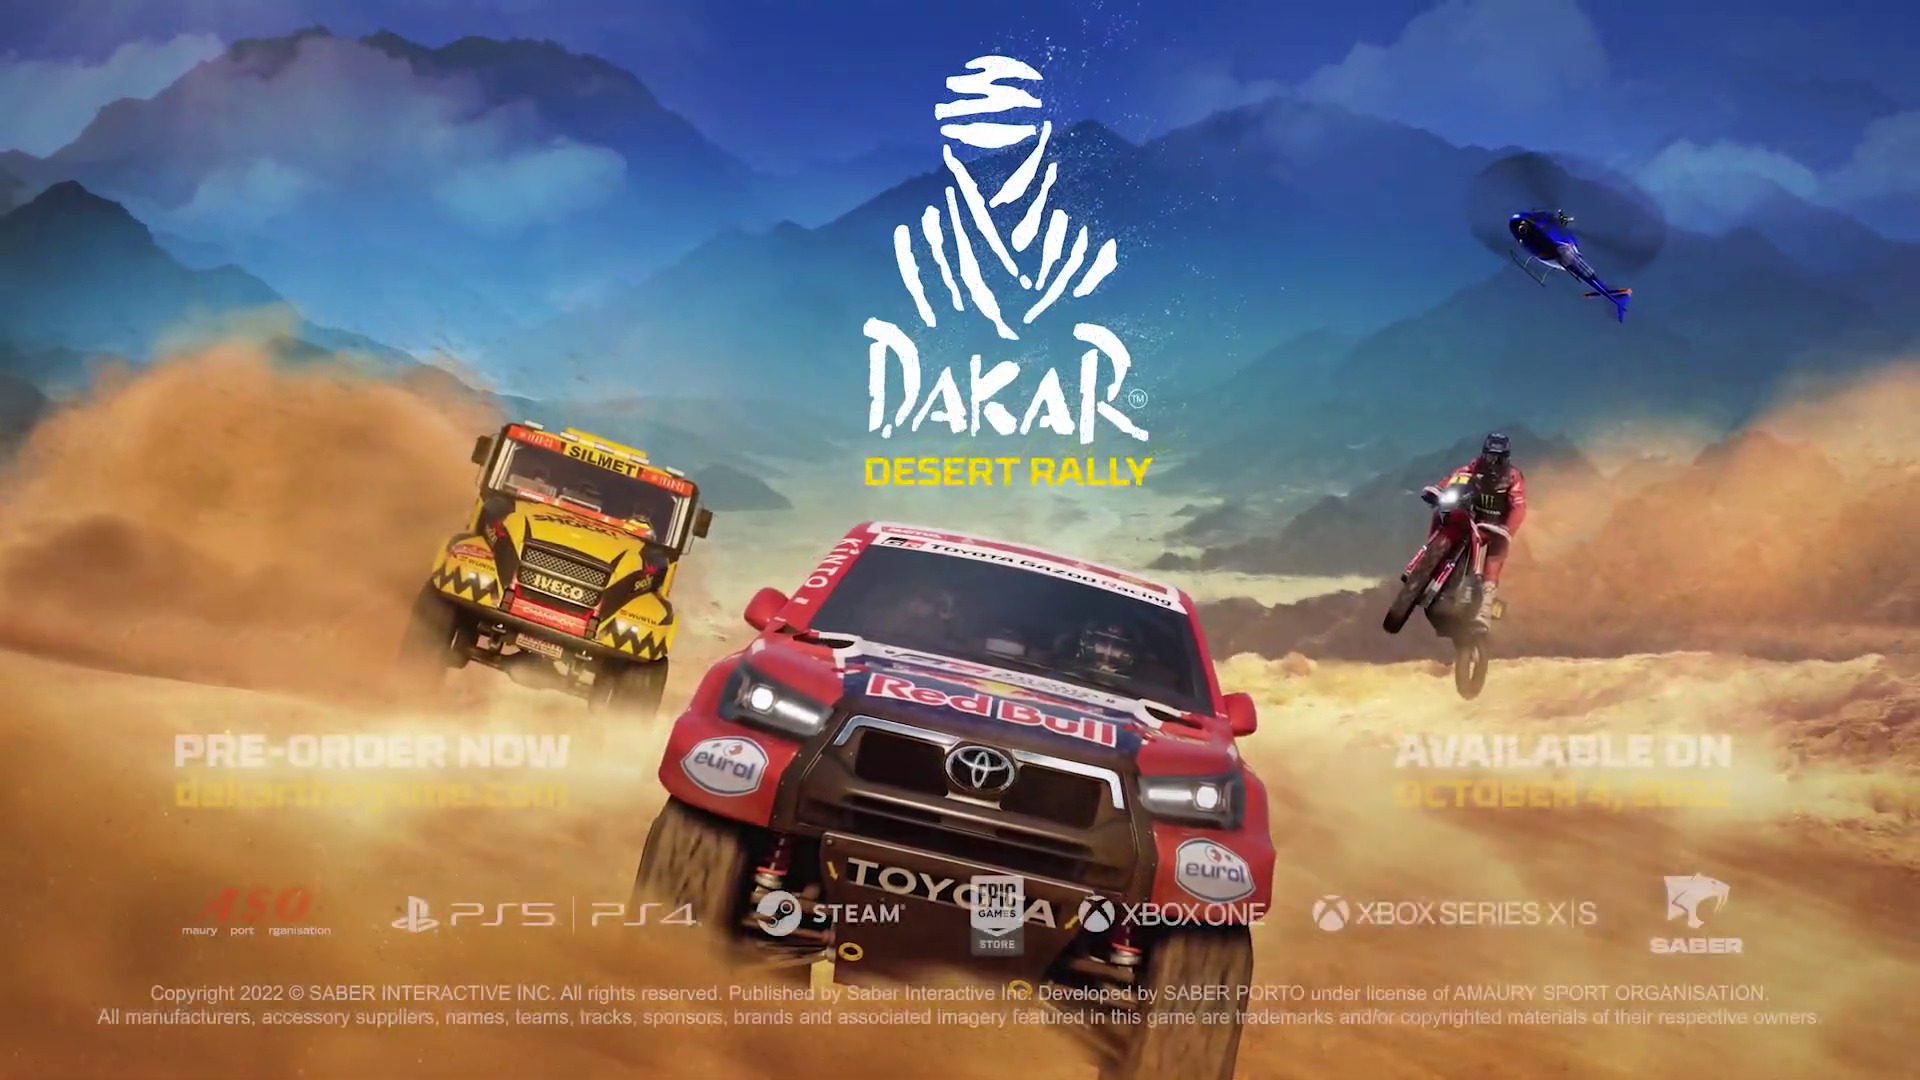 Dakar Desert Rally - O Maior Game de Corrida Já feito